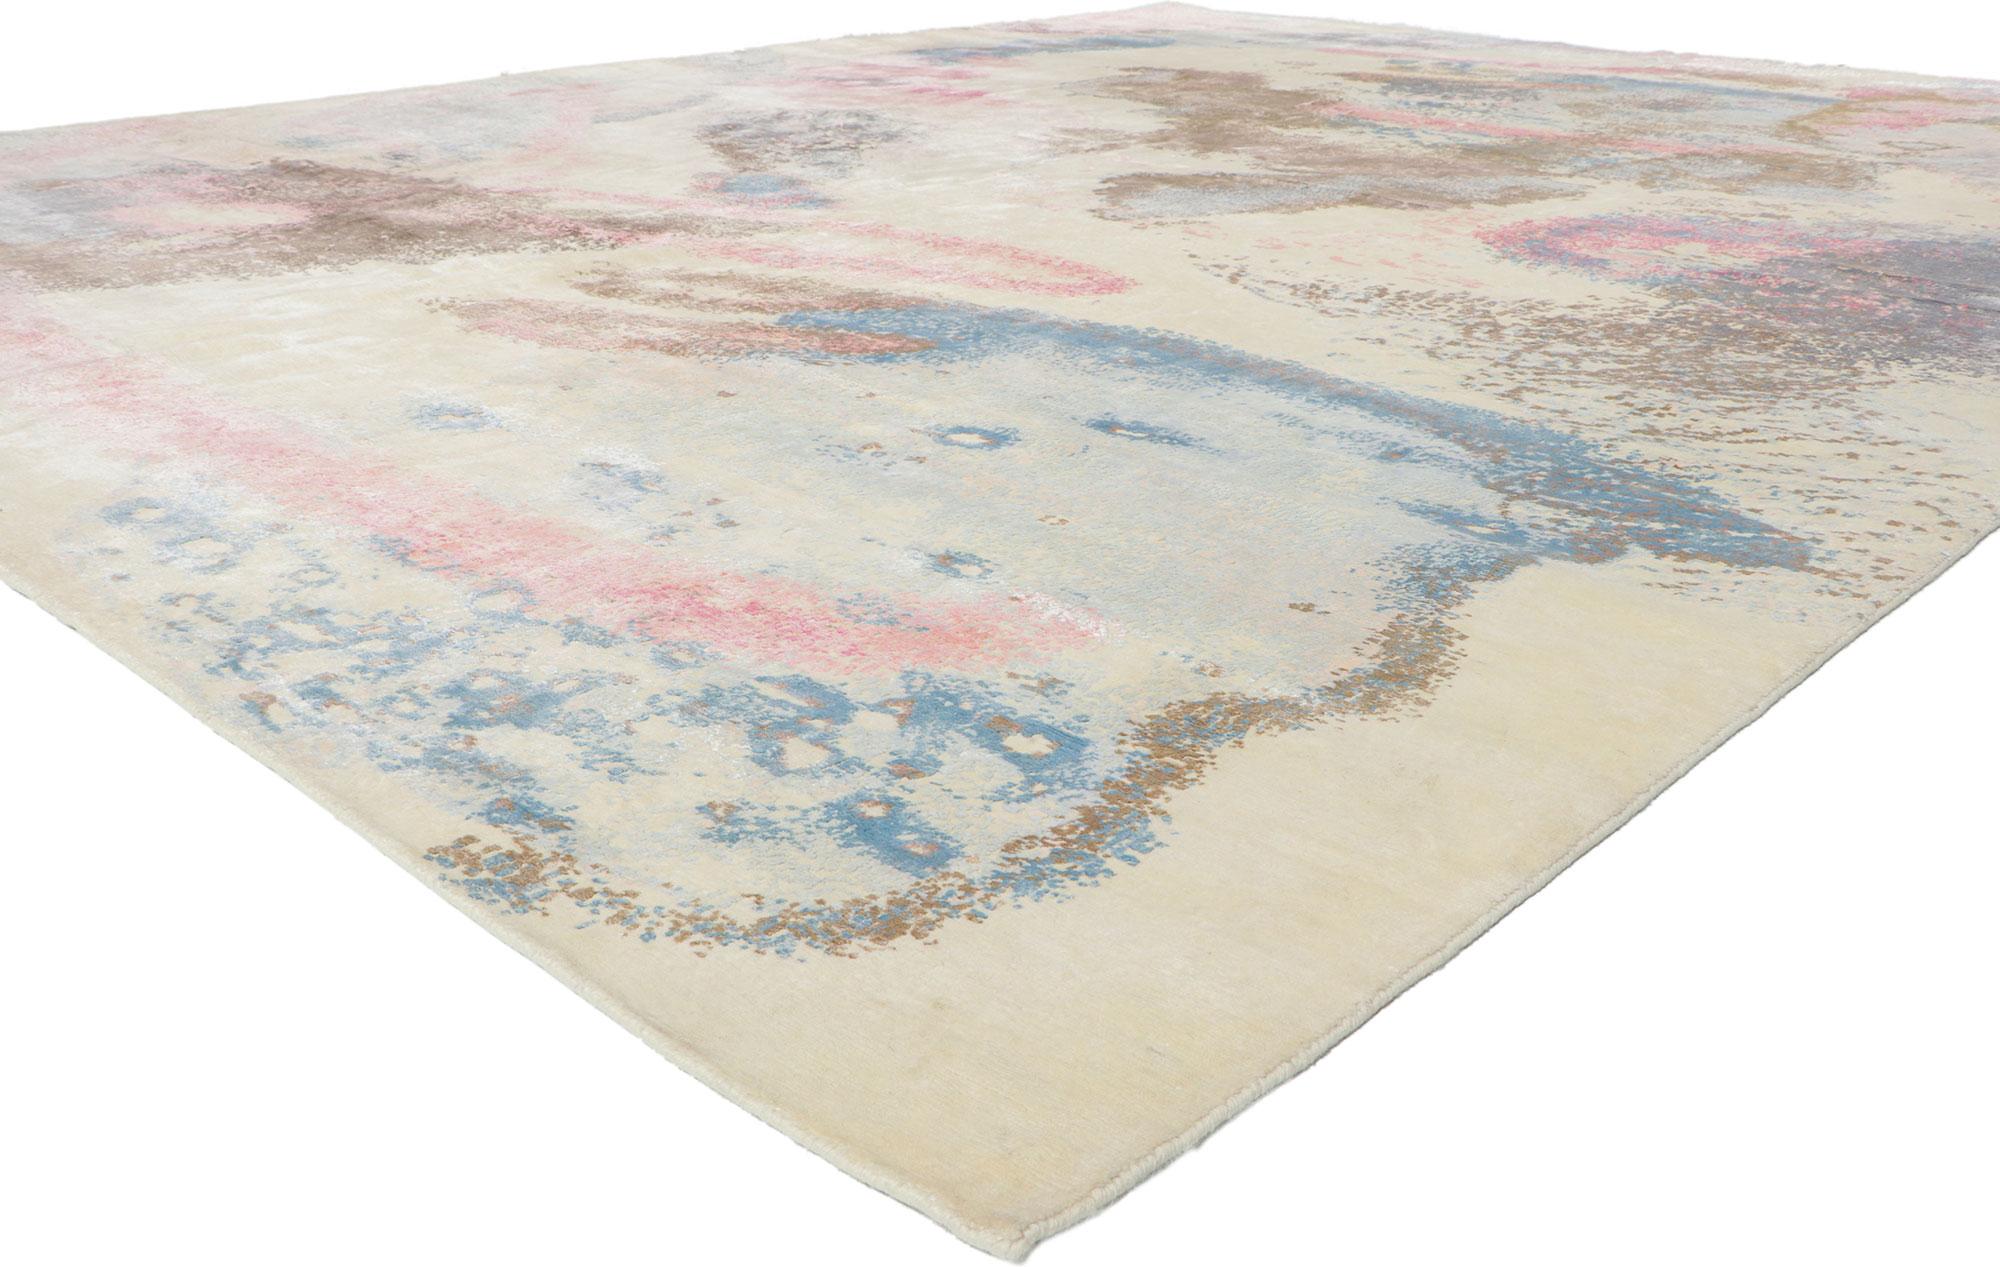 30790 neuer zeitgenössischer abstrakter Teppich, inspiriert von Helen Frankenthaler, 11'07 x 14'08. Dieser handgeknüpfte, moderne, strukturierte Teppich mit seinem modernen Stil und dem erhabenen Seidendesign mit unglaublichen Details und Texturen